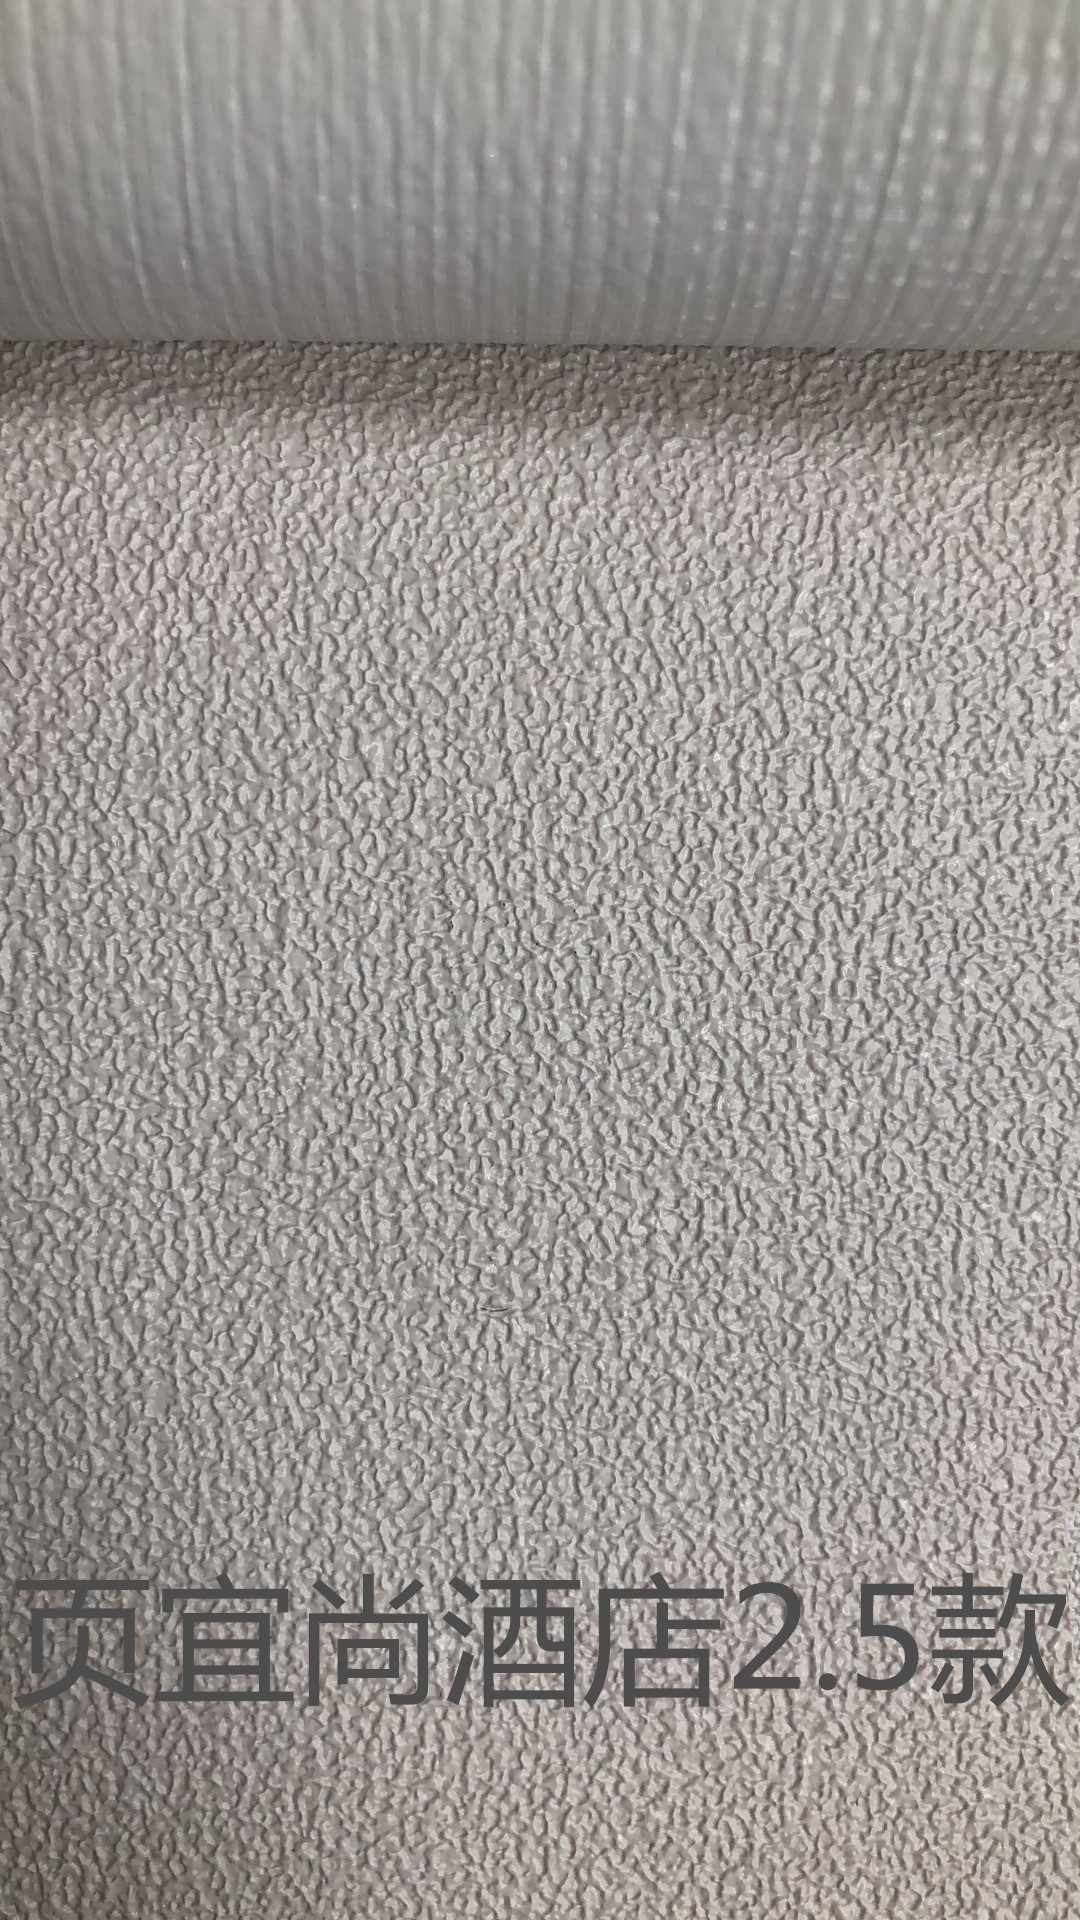 页宜尚酒店2.5 137PVC工程墙布阻燃连锁酒店消防检测壁纸壁布